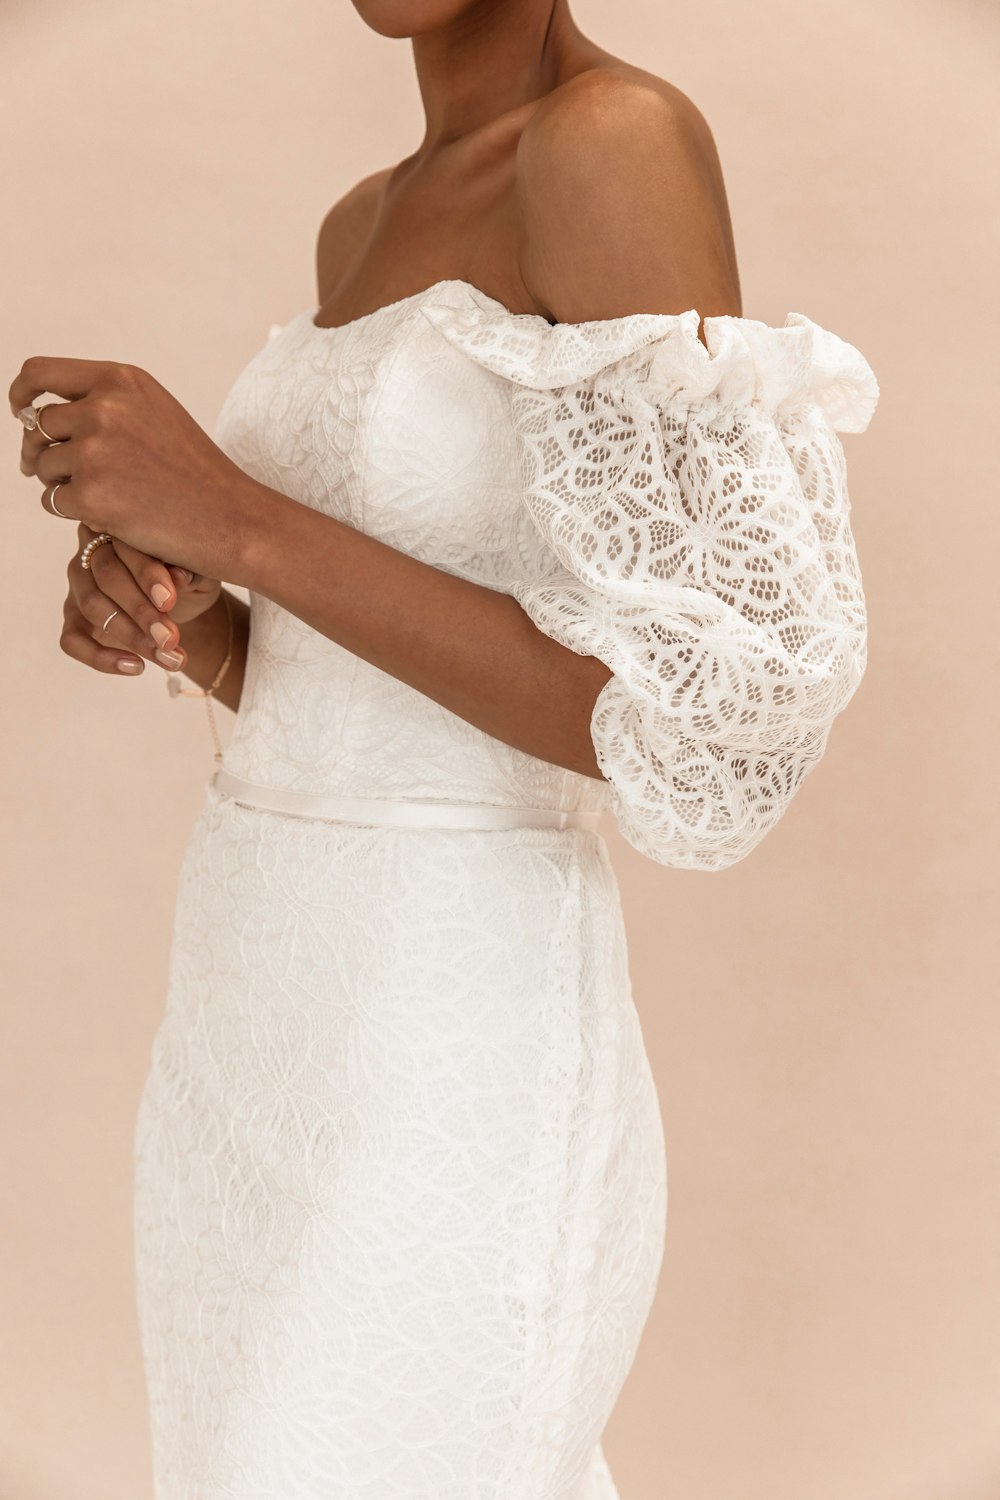 Femme en robe de dentelle blanche tenant un bouquet blanc